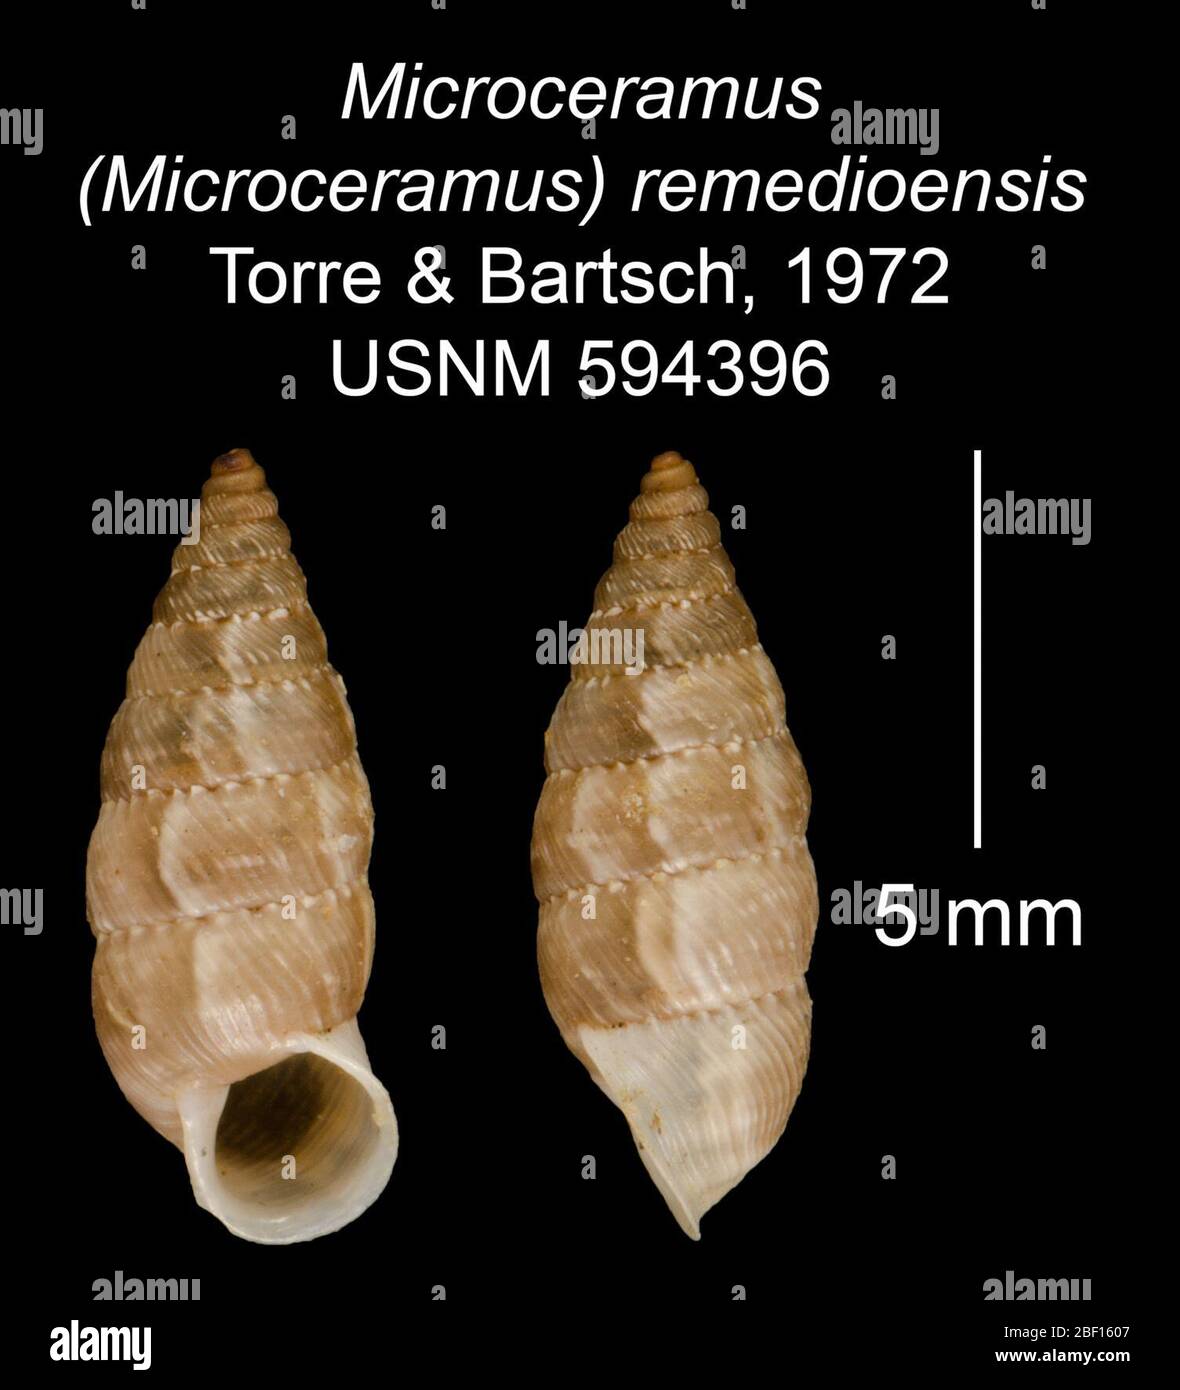 Microceramus Microceramus remedioensis. 20 Jan 20161 Stock Photo